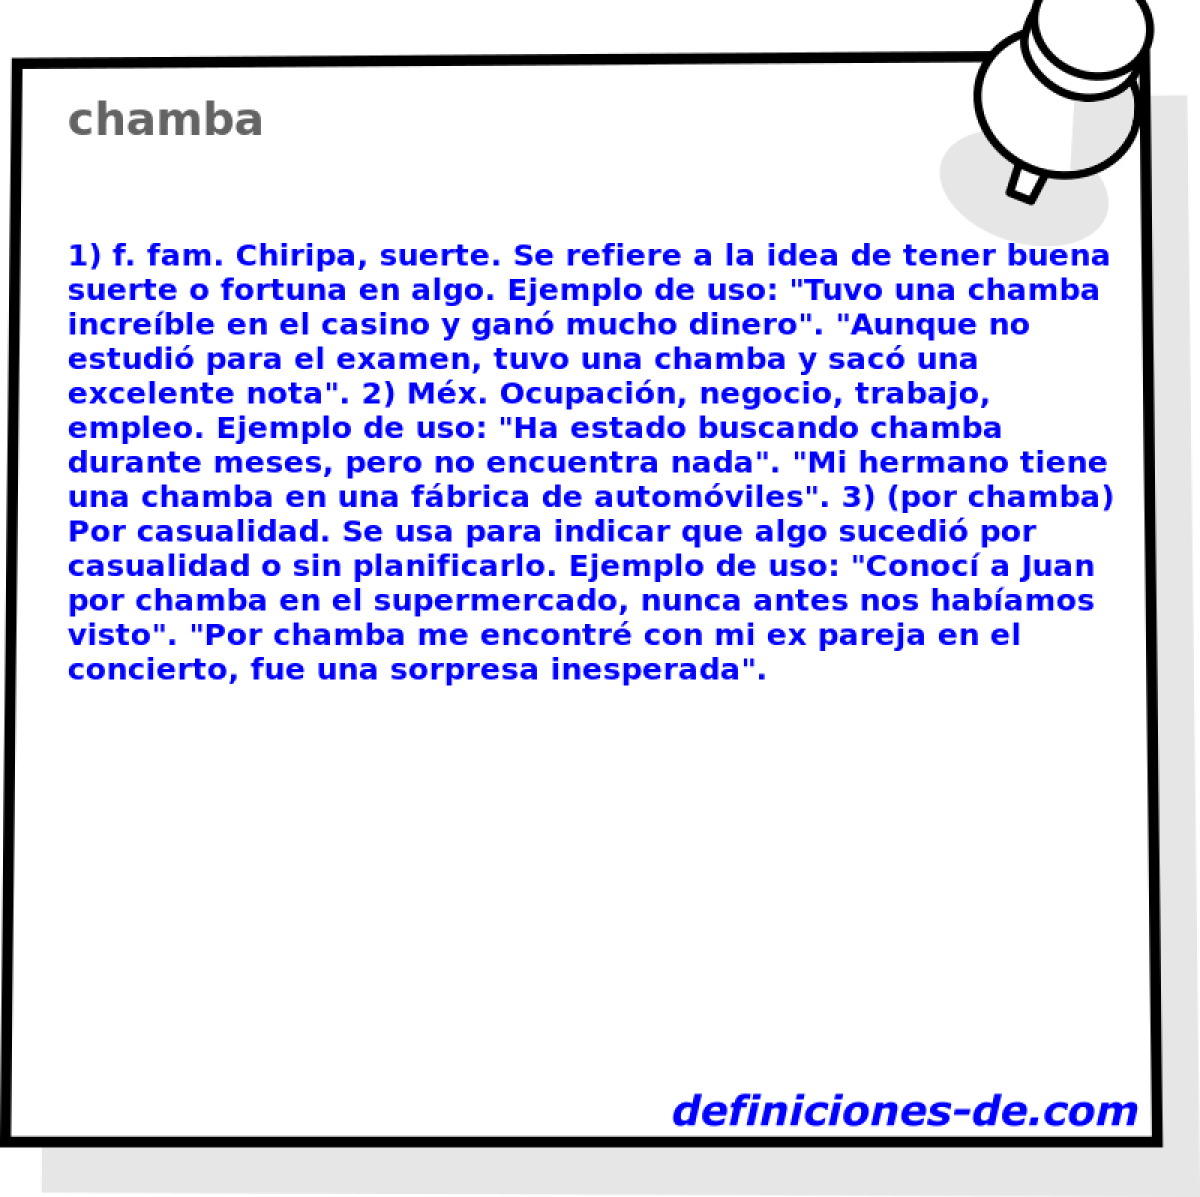 chamba 